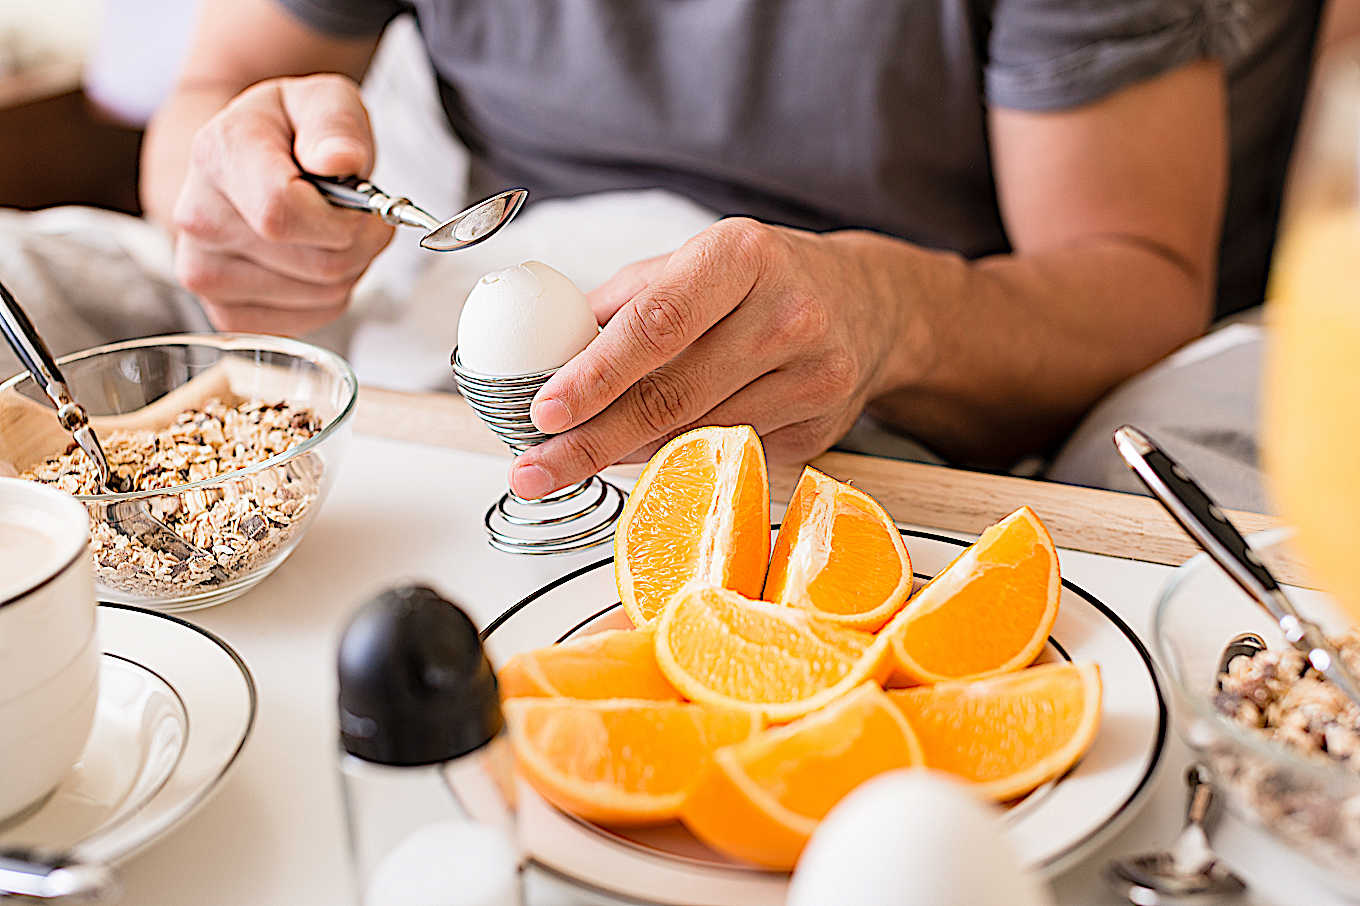 Aqui está a verdade sobre ovos e colesterol que vale a pena ler